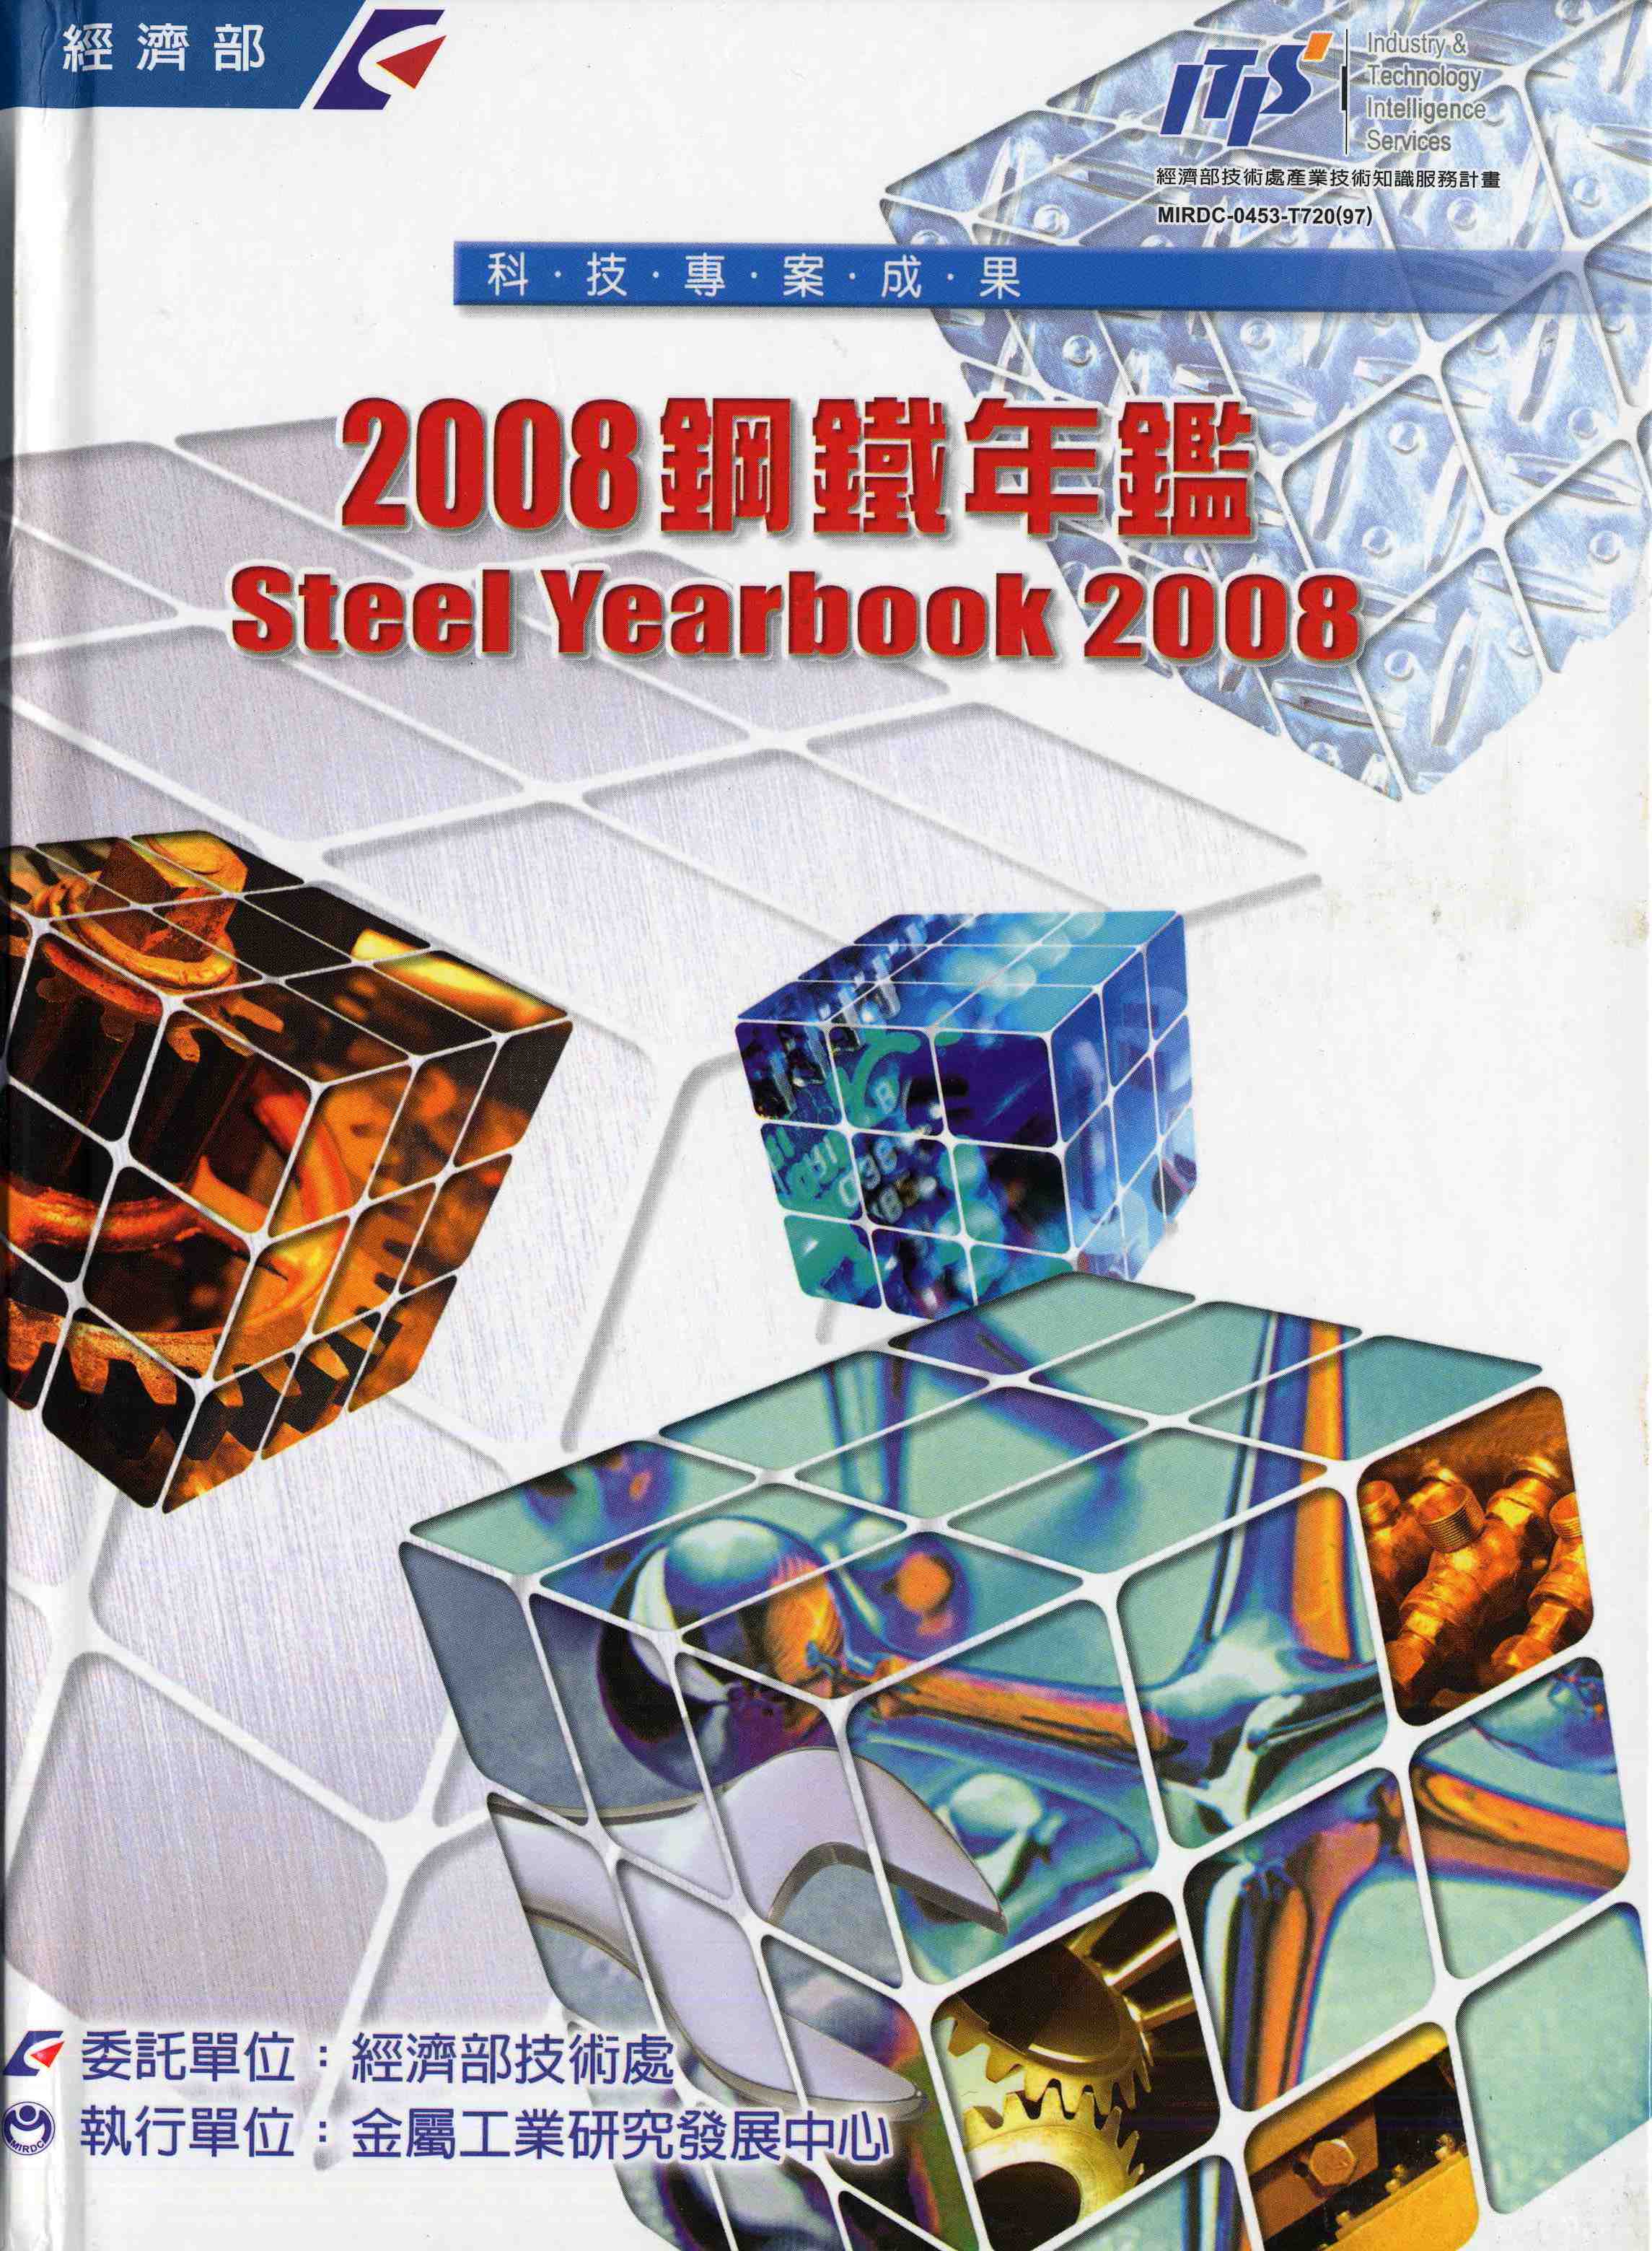 2008鋼鐵年鑑